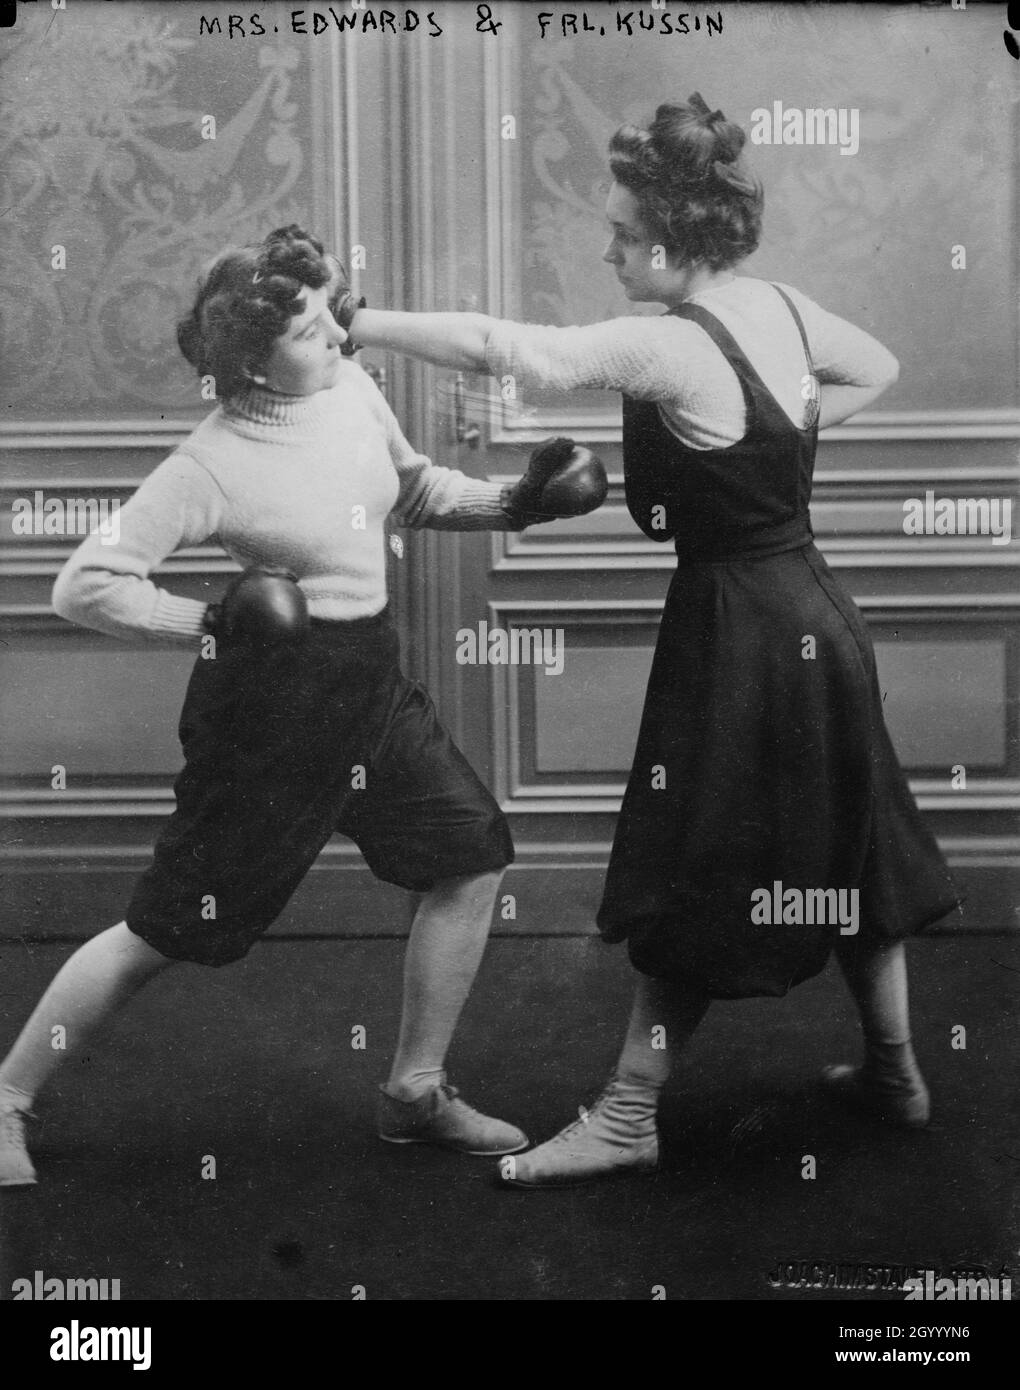 La foto mostra Fraulein Kussin (a destra) e la signora Edwards (a sinistra) che ha avuto una partita di pugilato il 7 marzo 1912. Foto Stock